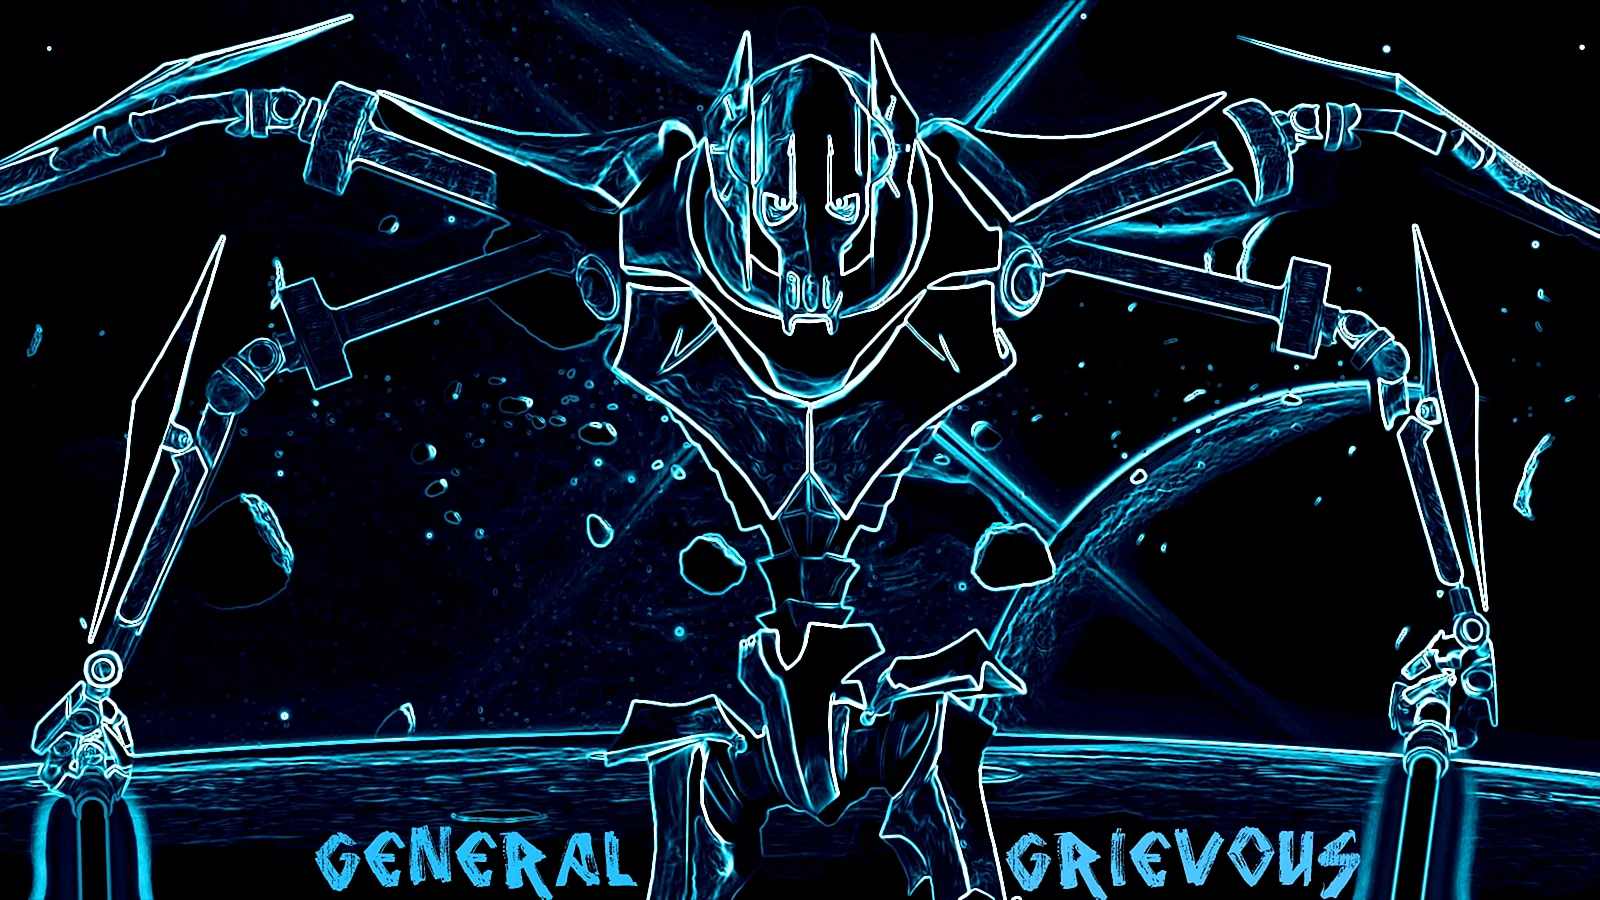 General Grievous Wallpaper